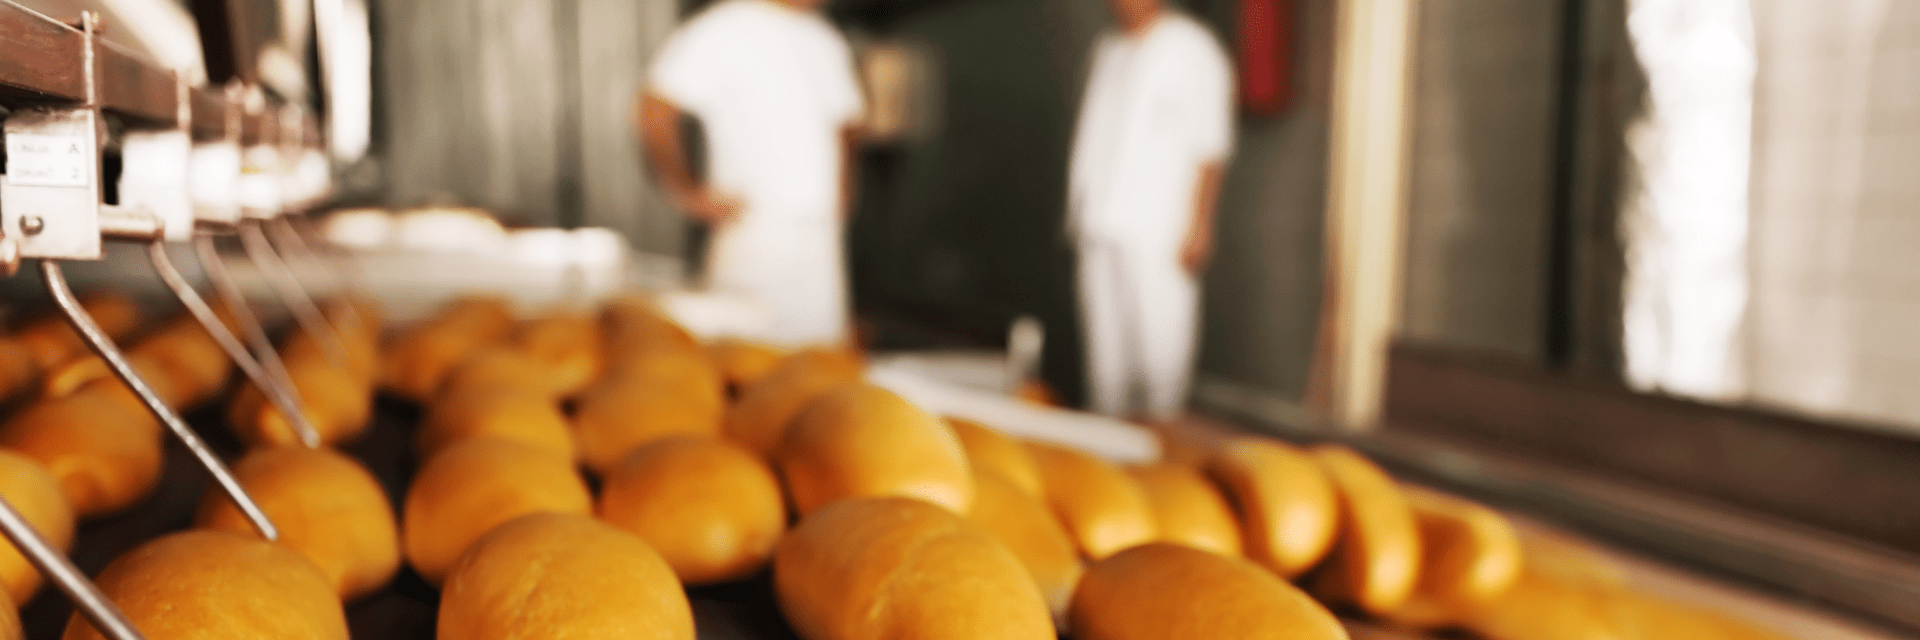 Tout savoir manutention poudres boulangerie pâtisserie industrielle